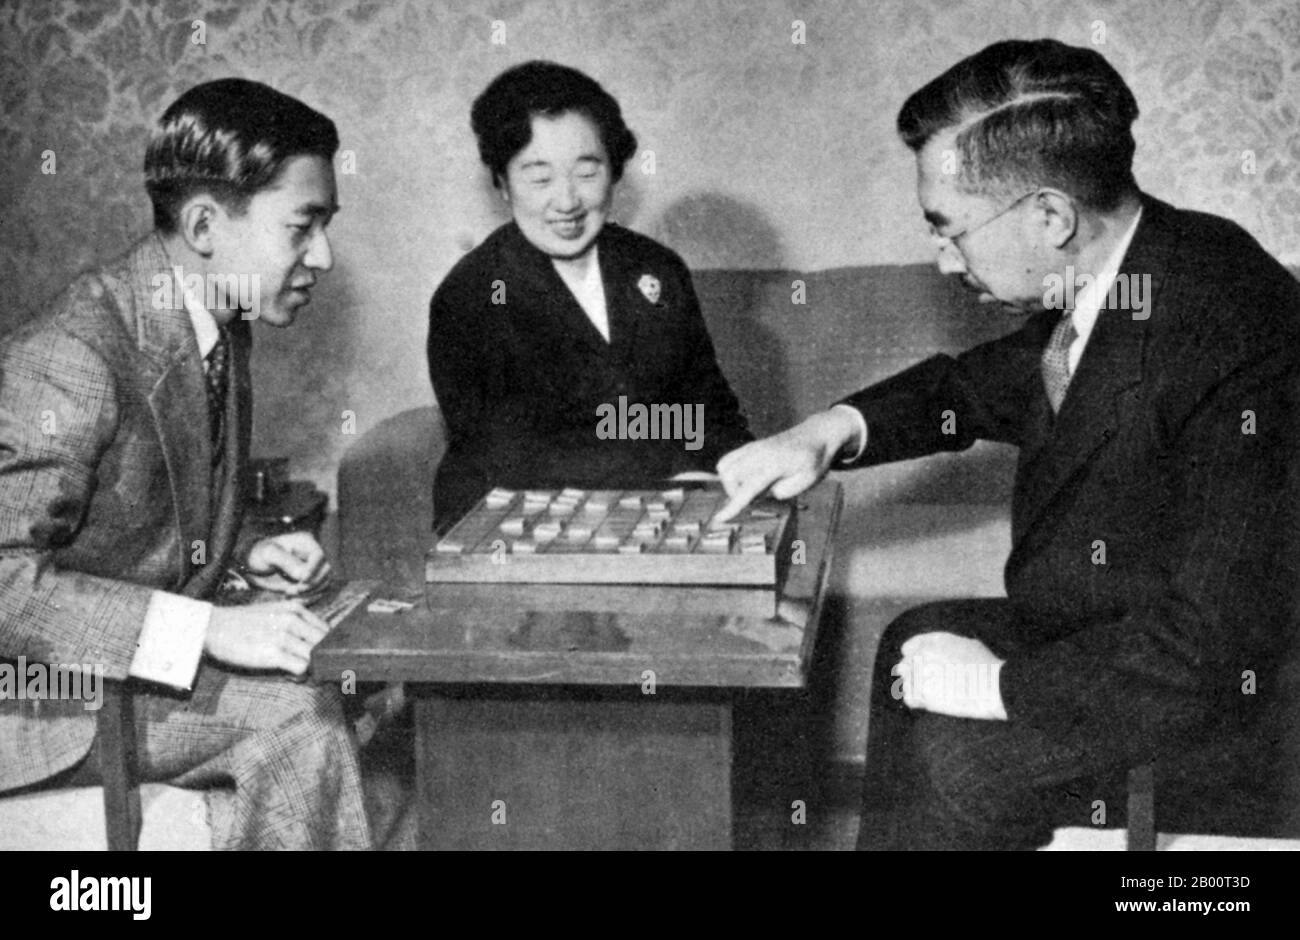 Japón: La familia imperial jugando un juego de mesa. Imagen informal de la familia Imperial jugando un juego de mesa (1950). El príncipe heredero Akihito izquierda, el centro de la emperatriz Kojun, el emperador Hirohito derecha. Hirohito, el Emperador Shōwa (29 de abril de 1901 – 7 de enero de 1989), fue el 124º emperador de Japón según el orden tradicional, reinando desde el 25 de diciembre de 1926, hasta su muerte en 1989. Aunque mejor conocido fuera de Japón por su nombre personal Hirohito, en Japón ahora se le refiere exclusivamente por su nombre póstumo emperador Shōwa. Foto de stock